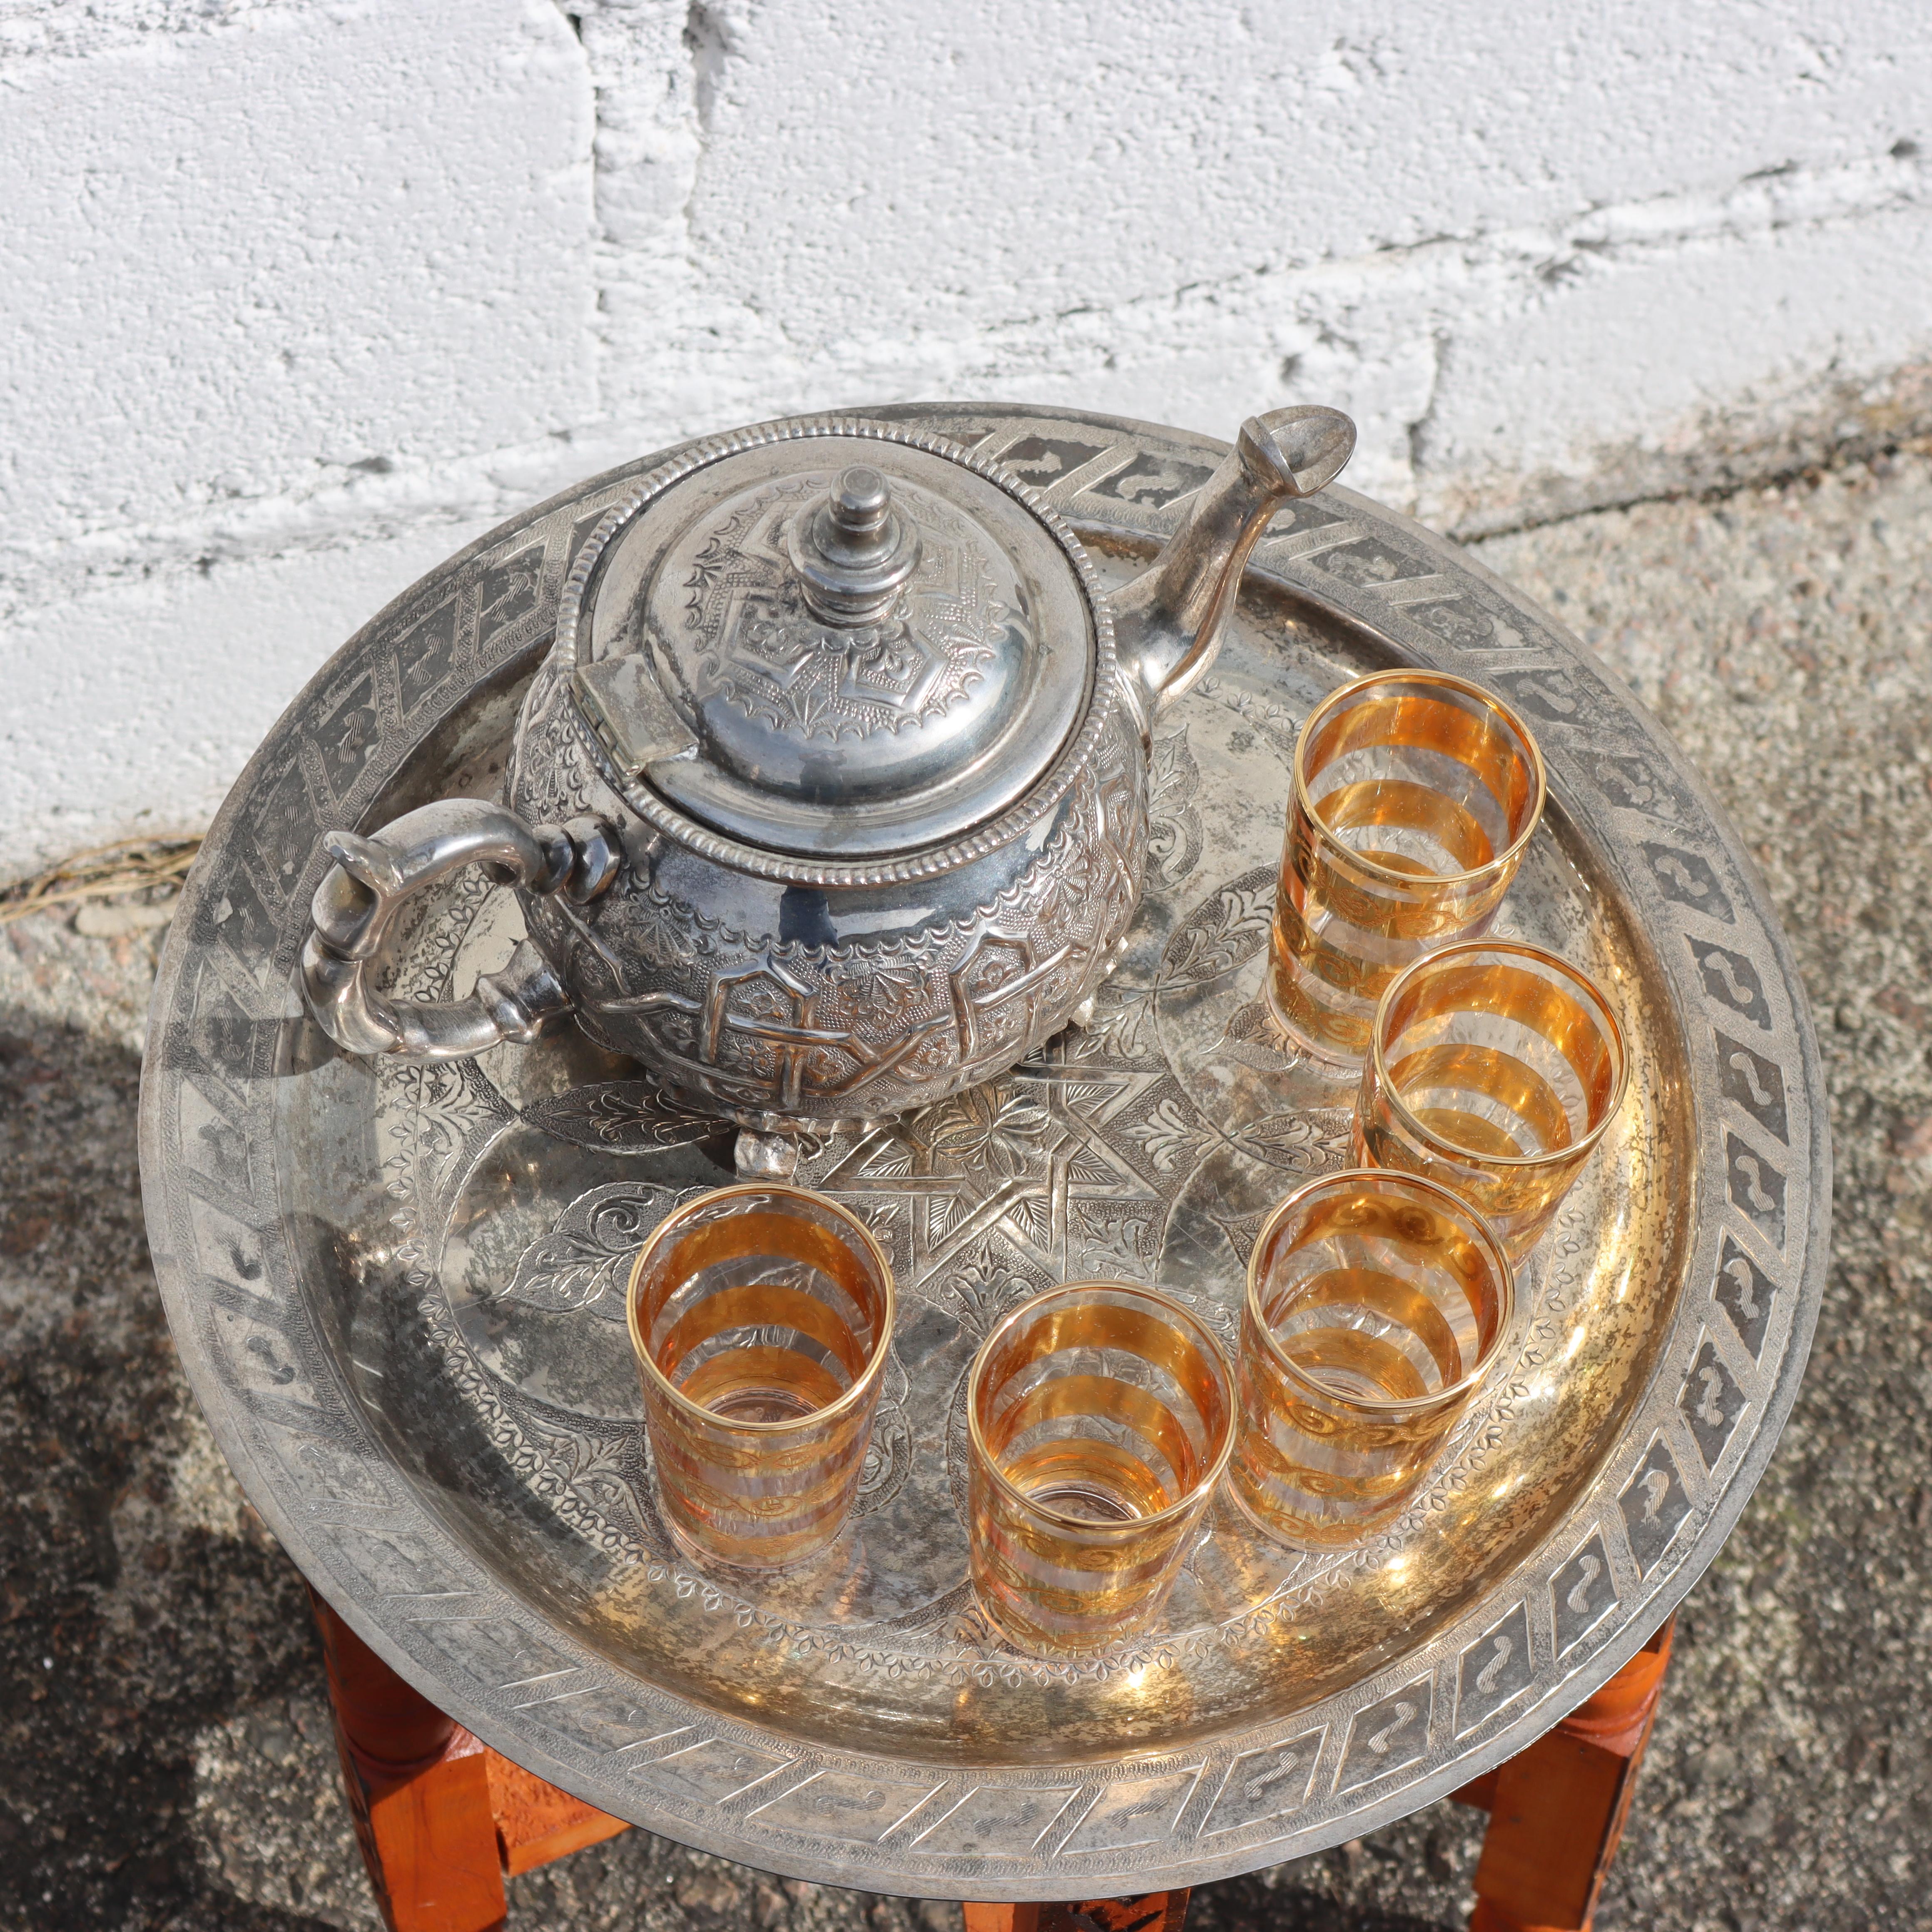 Merveilleuse table de cérémonie du thé marocaine des années 80

Plateau de table massif et orné en laiton argenté avec des motifs gravés de manière élaborée.

L'assiette repose sur une base pliante sculptée avec art, composée de six pieds en thuya